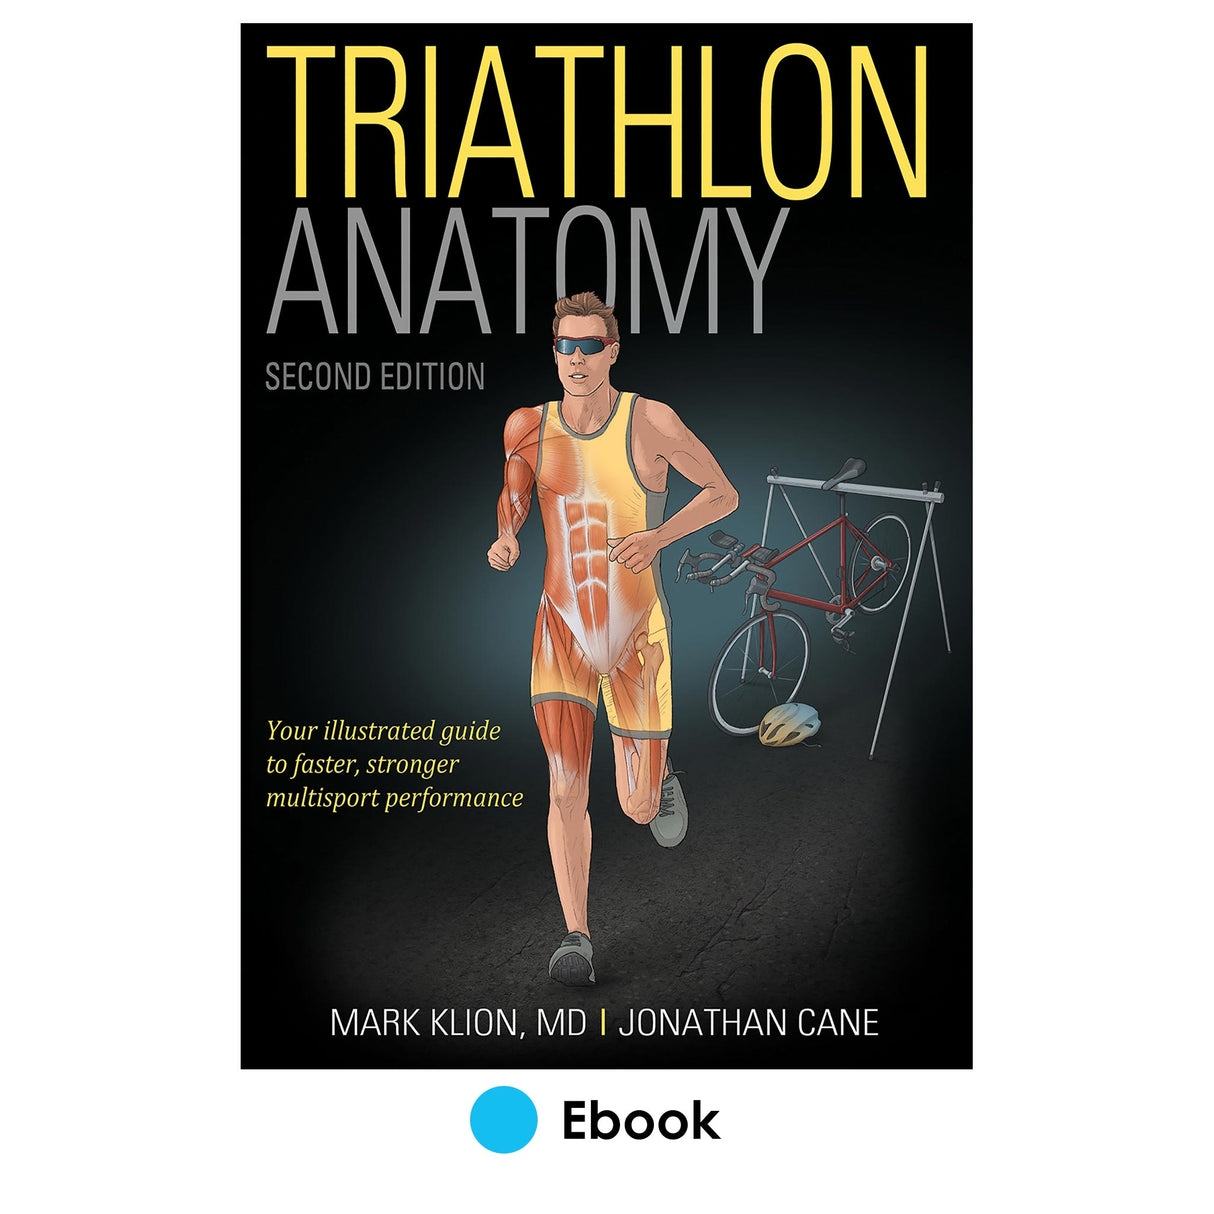 Triathlon Anatomy 2nd Edition epub